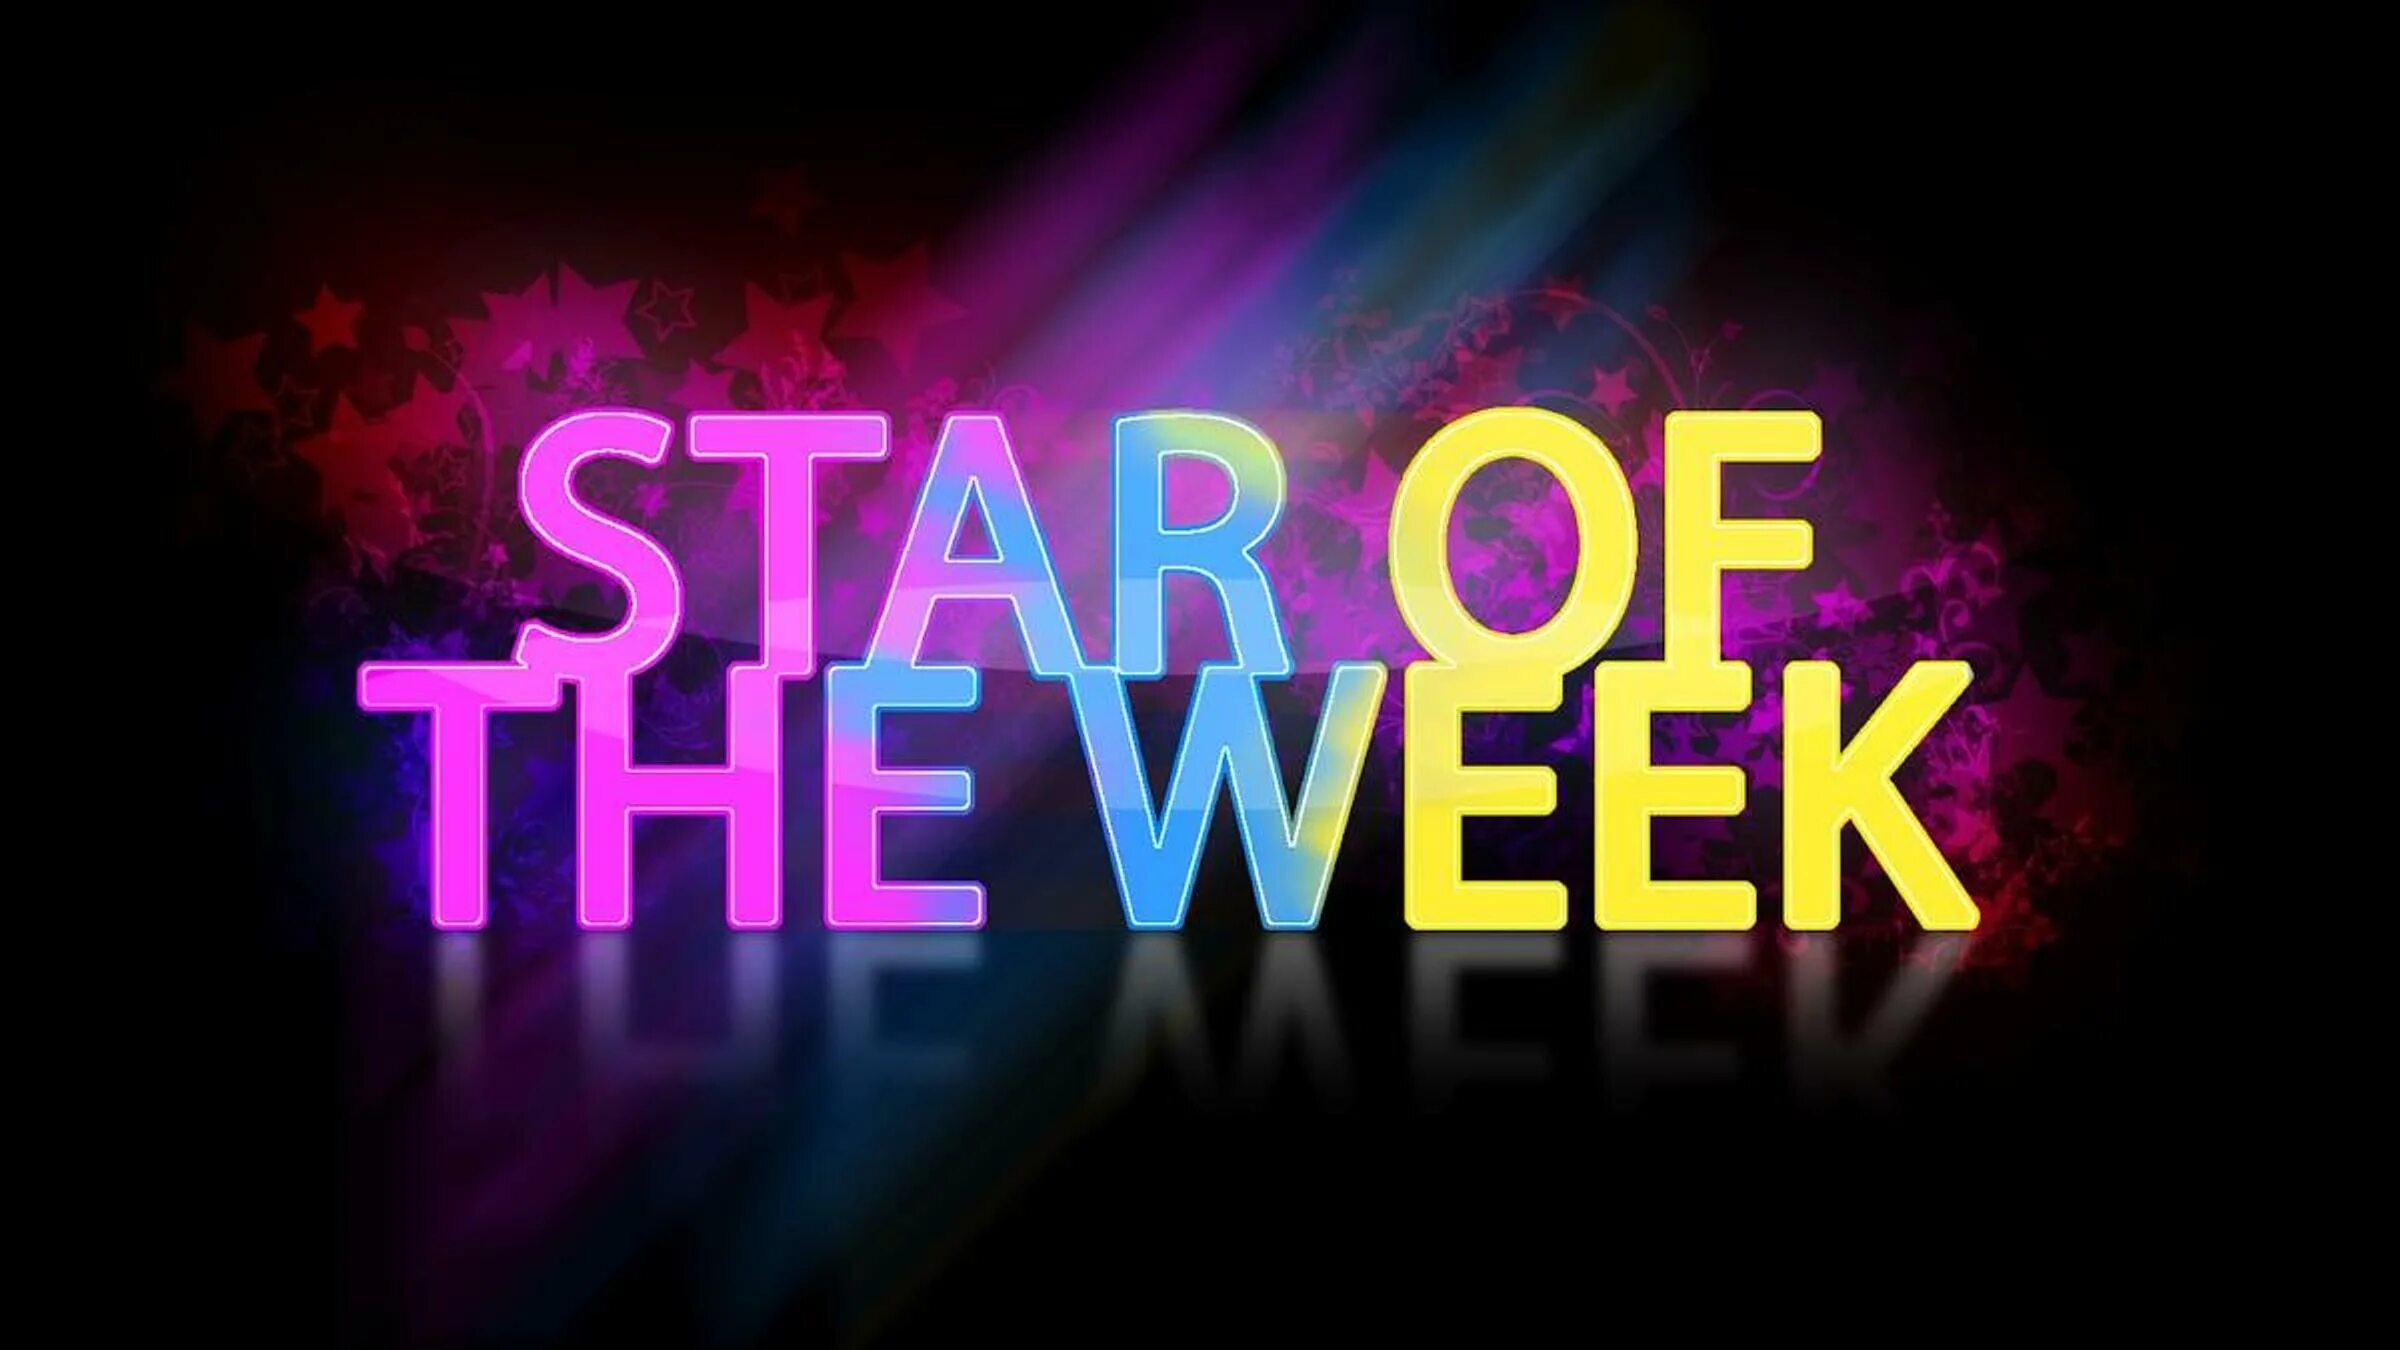 Star of the week. The week. Star of the week Award. Картинки this week. Week star